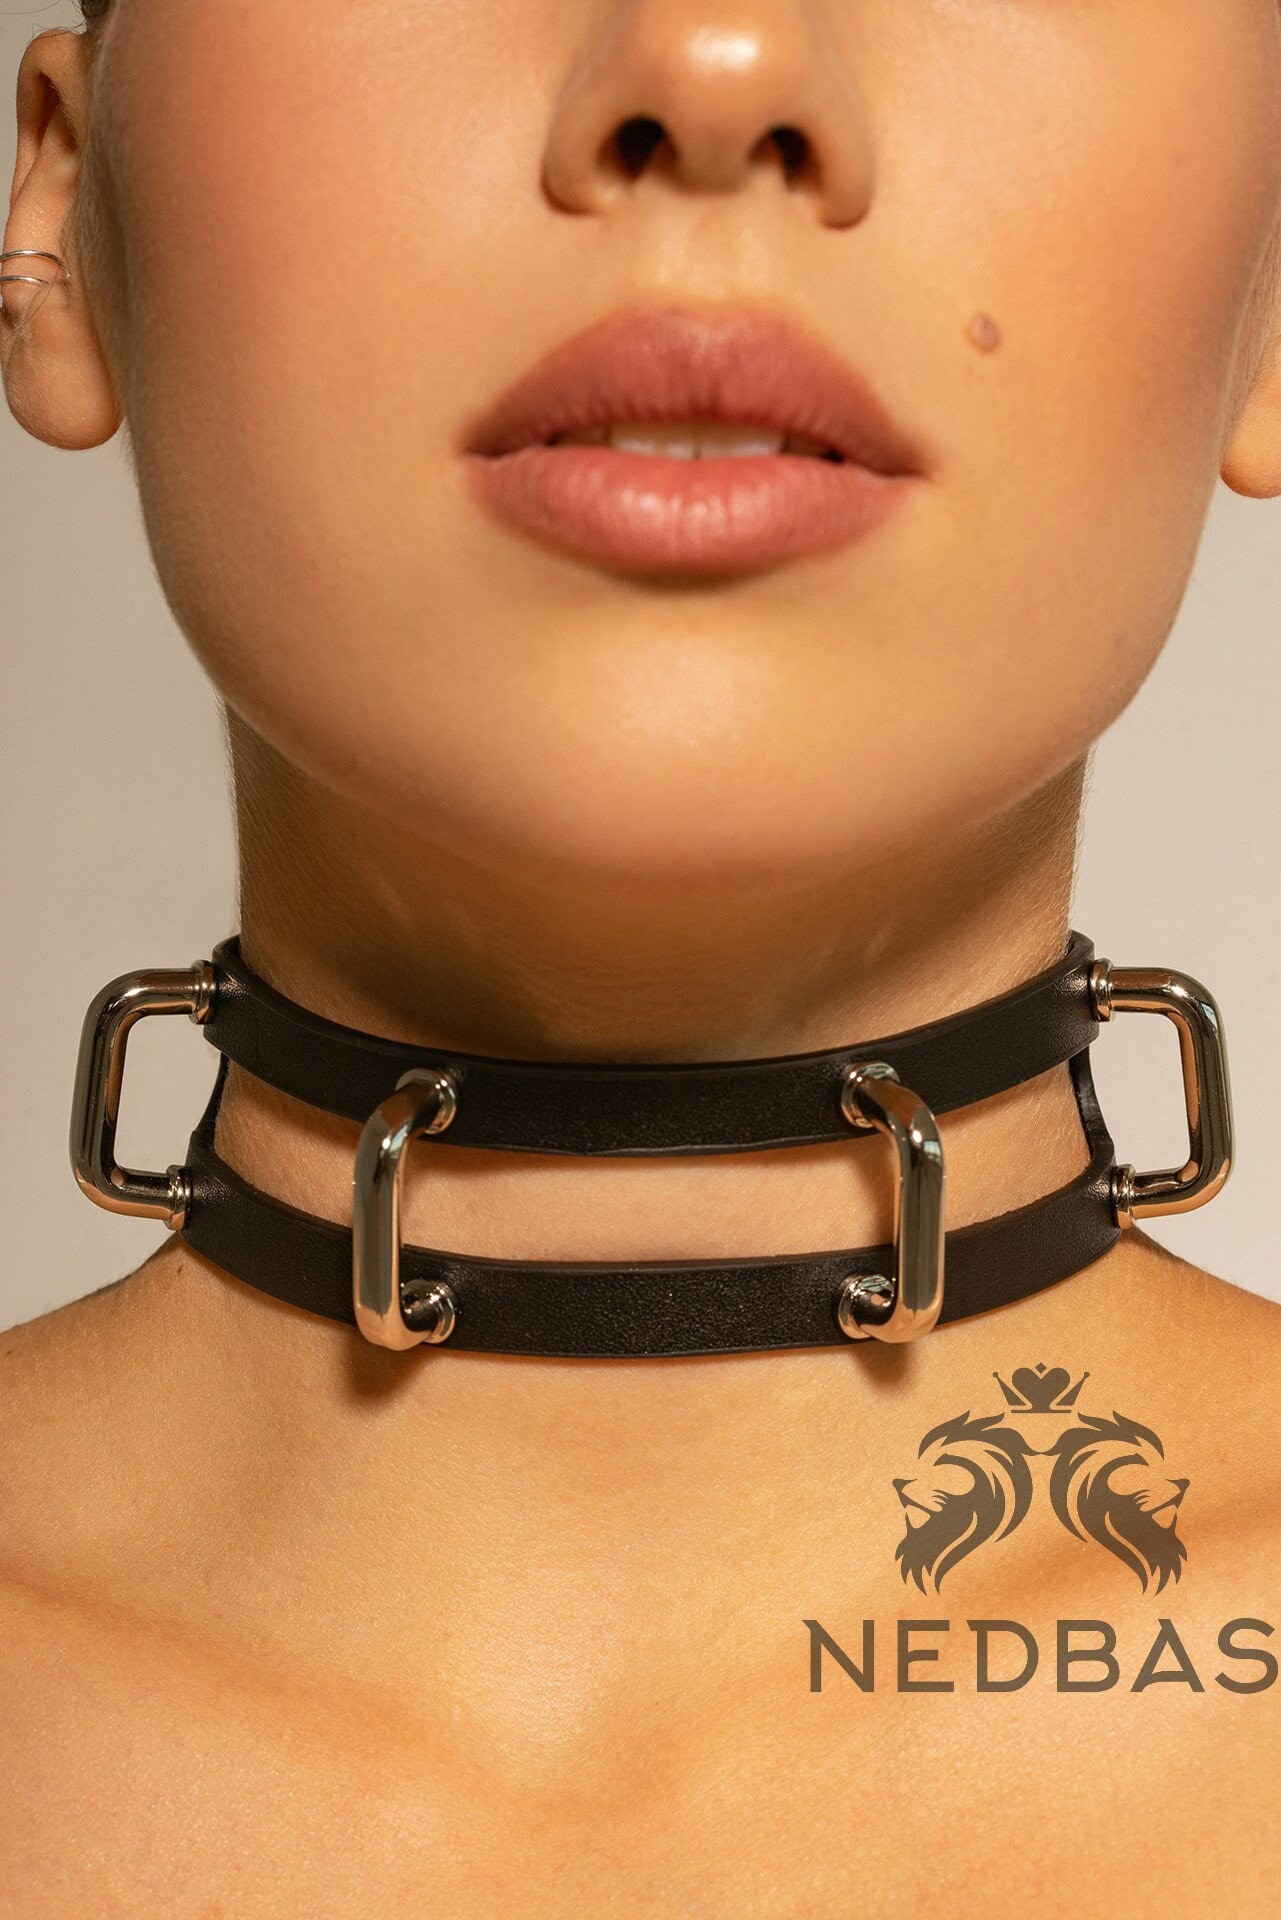 Collier BDSM en cuir pour adulte, ceinture réglable verrouillable